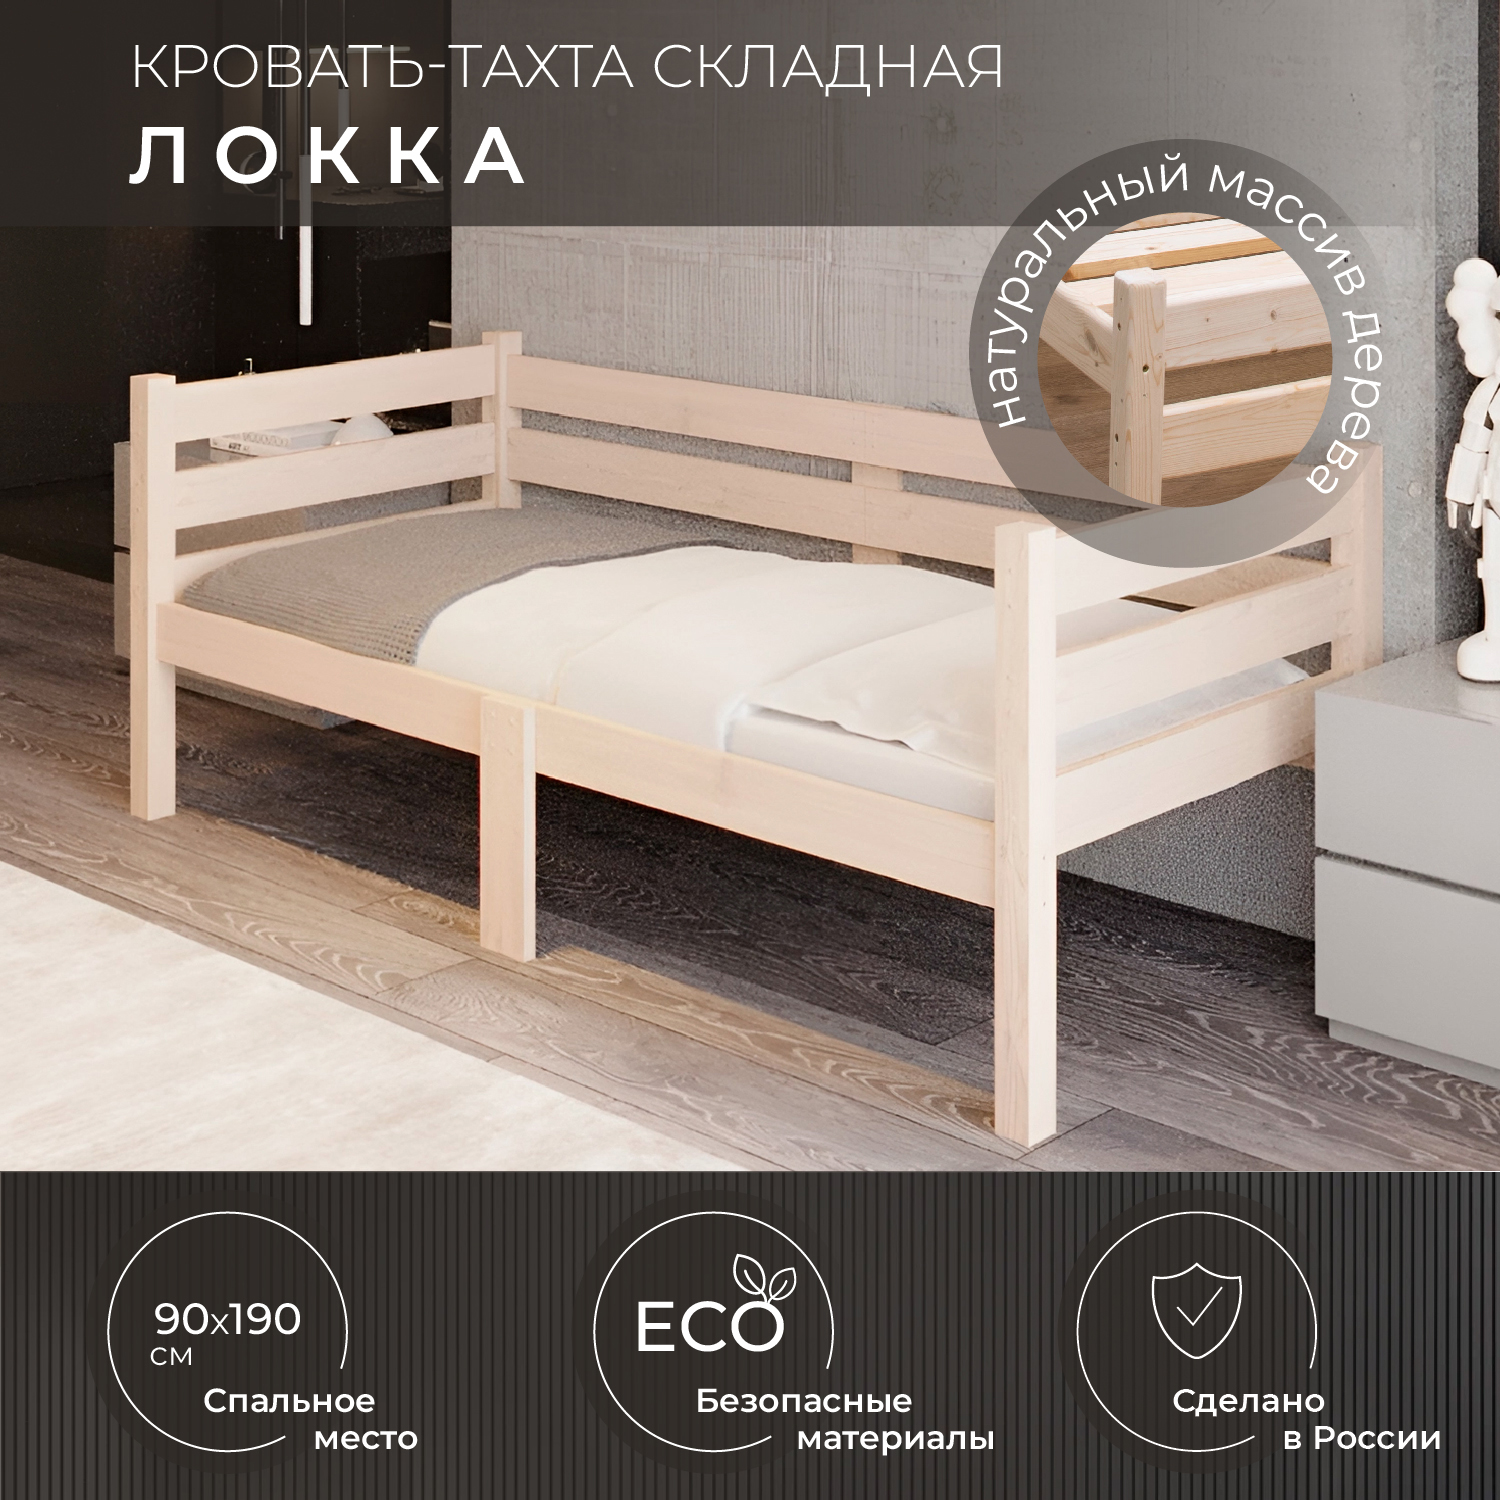 Кровать односпальная Новирон Локка 90х190 см складная бежевый